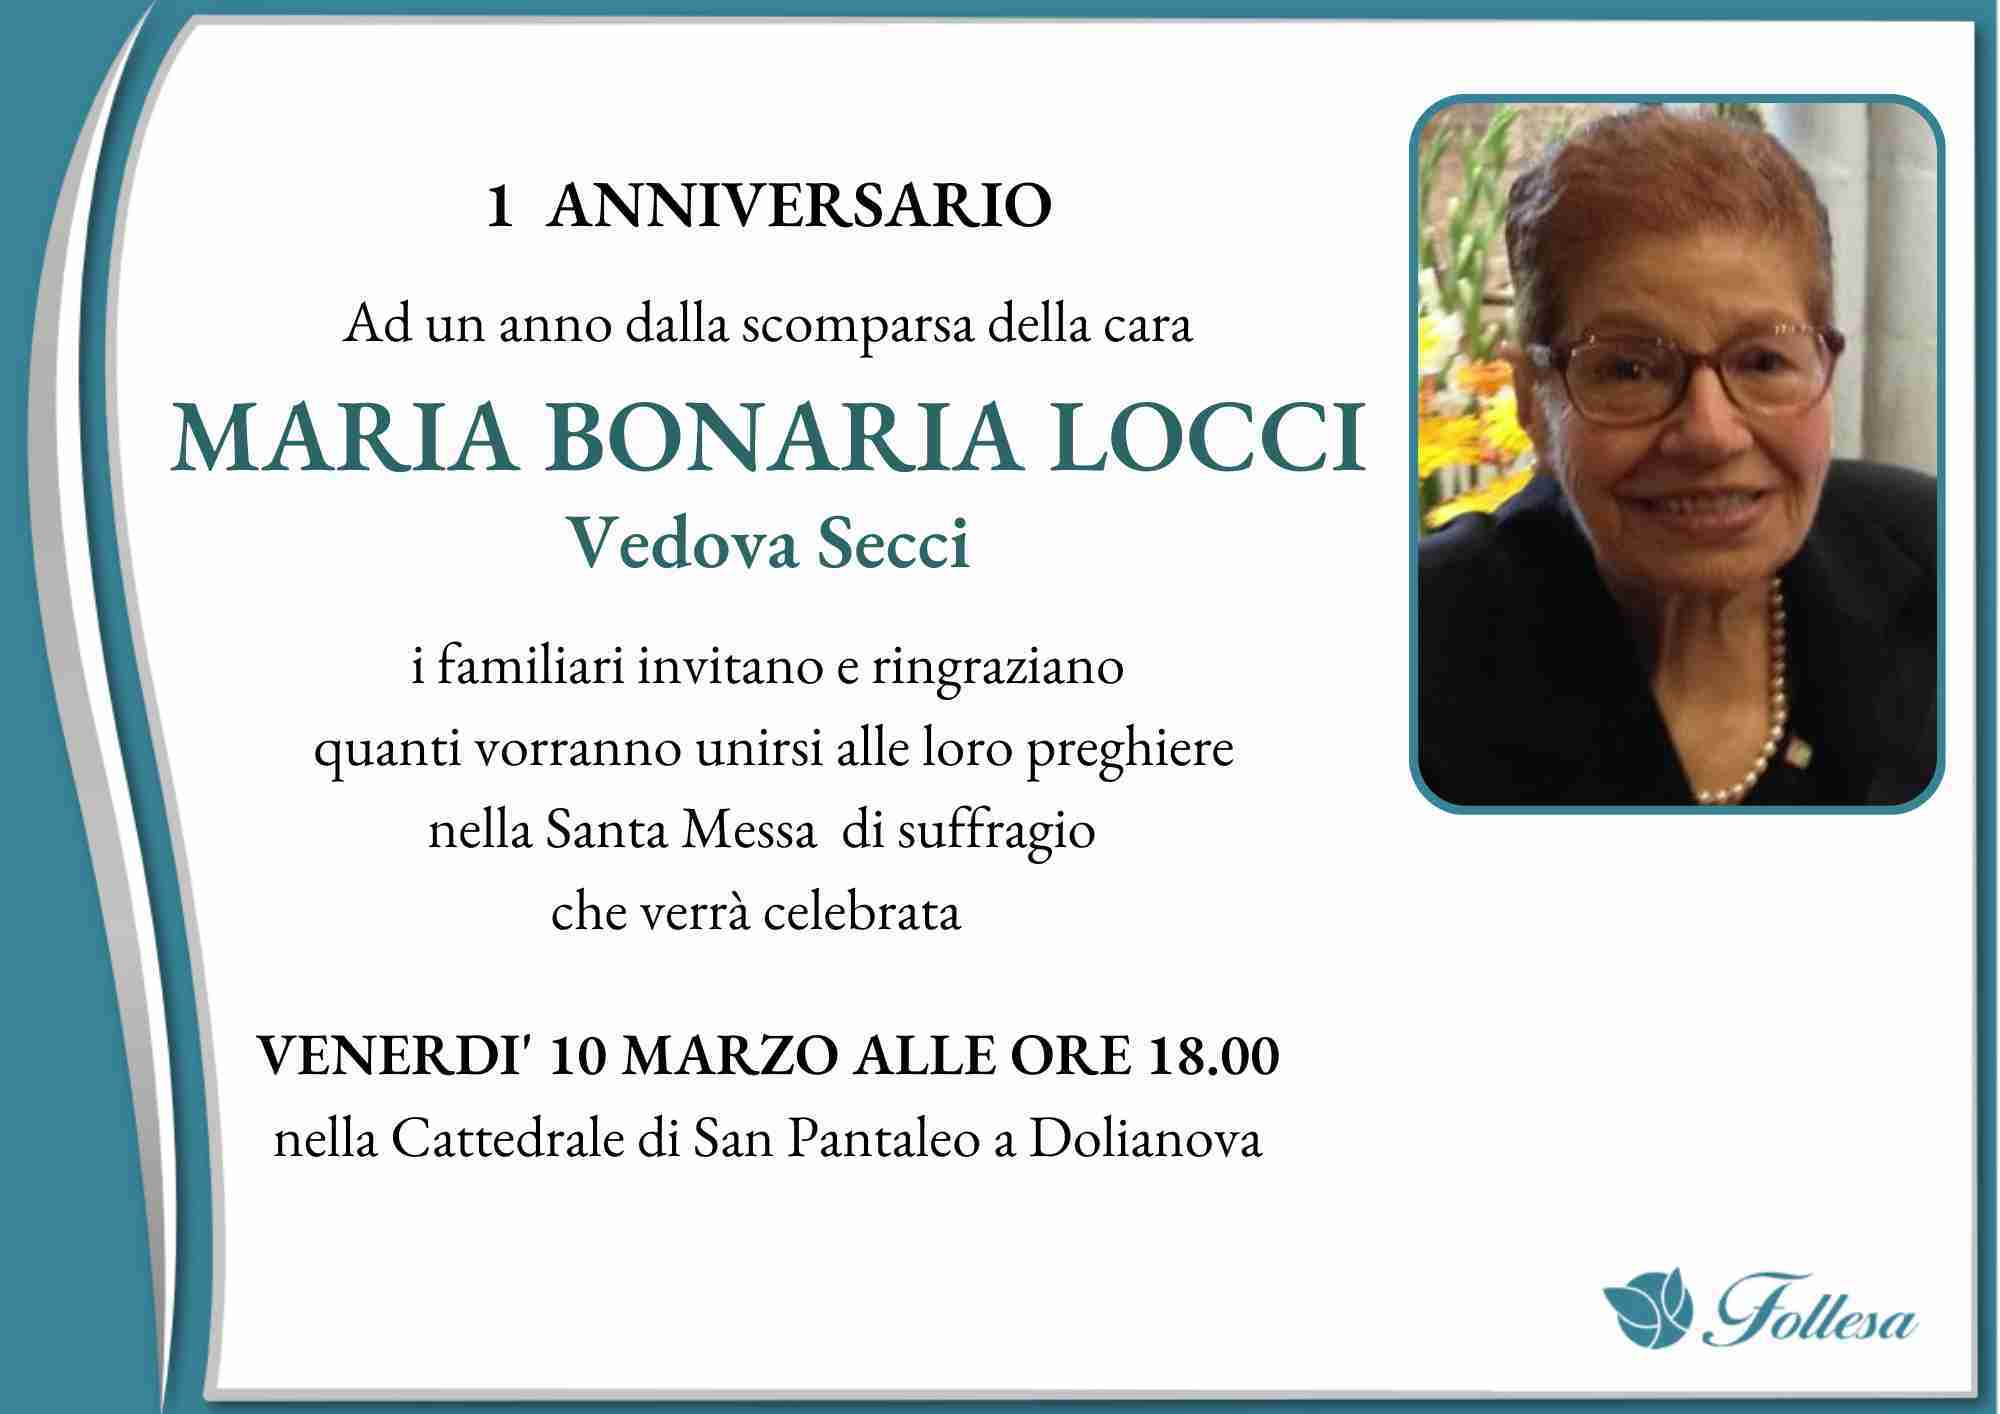 Maria Bonaria Locci